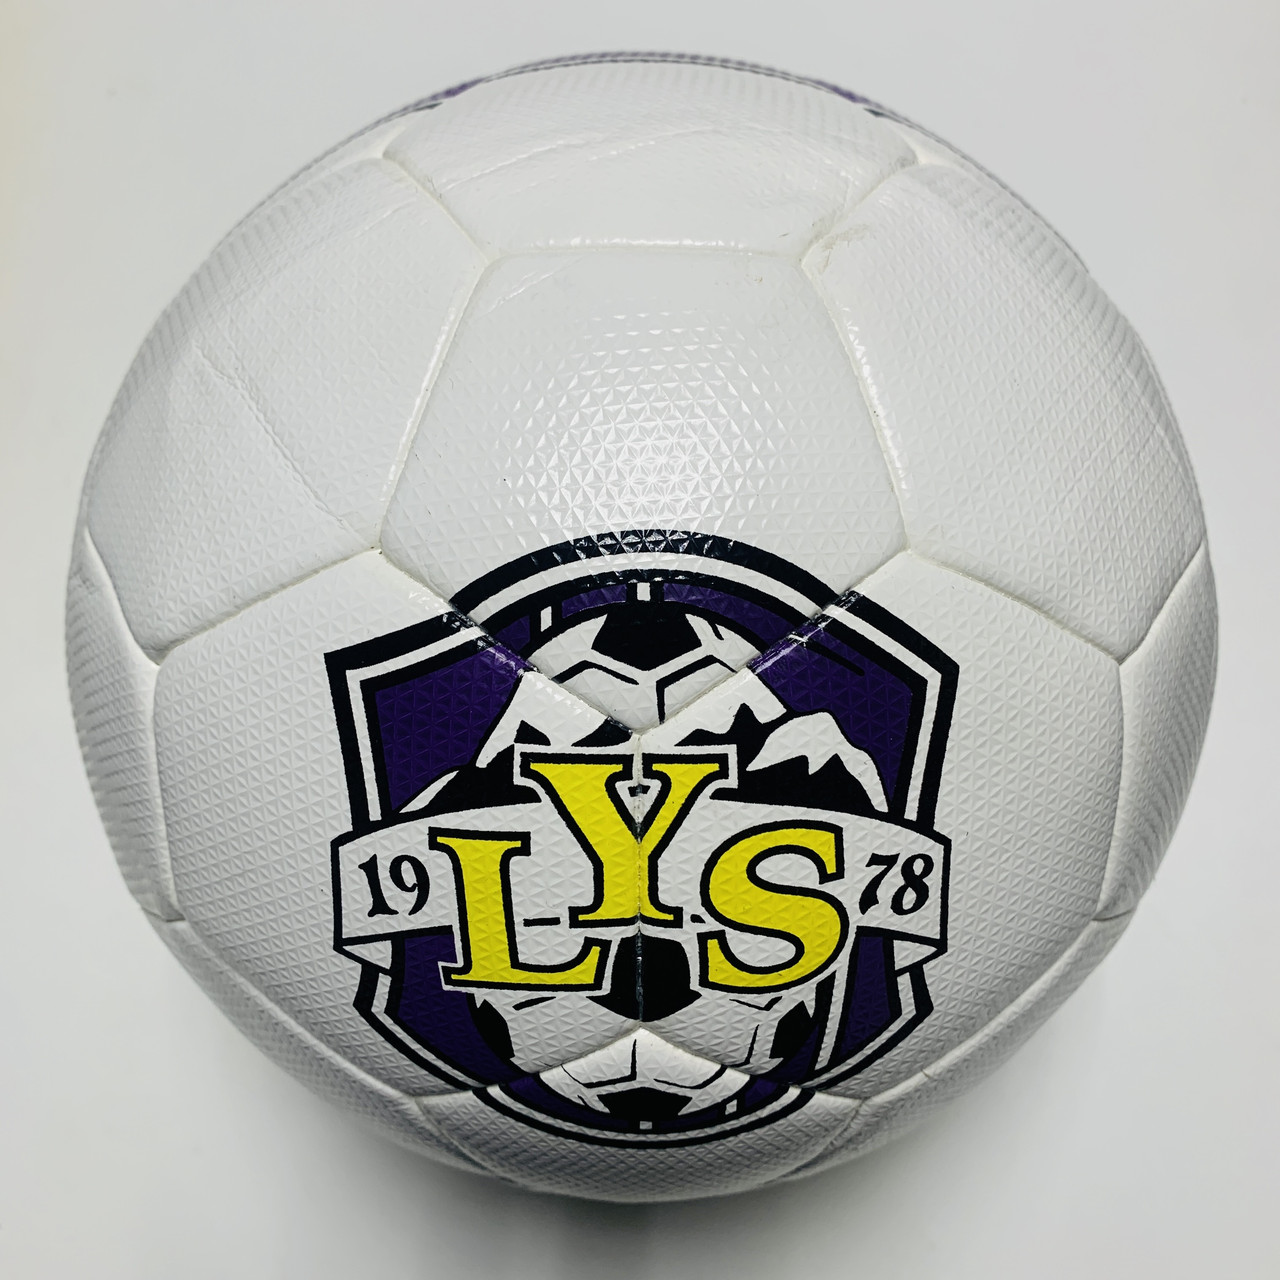 Футбольний м'яч Practic 19LYS78  Розмір 5 (Гібридний)